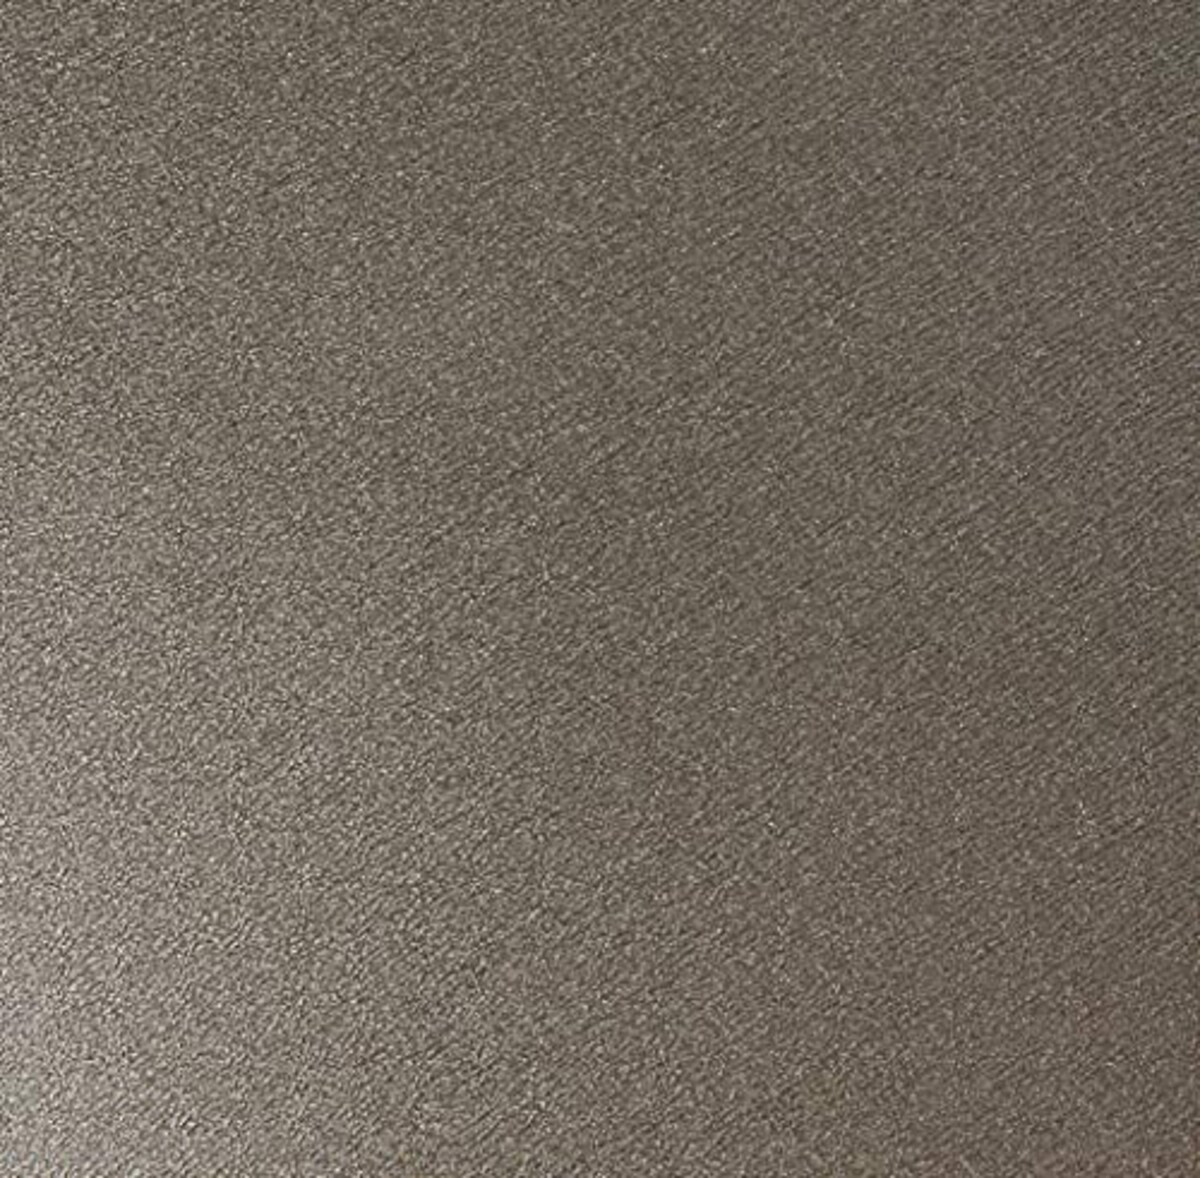  トラモンティーナ オムレツ フライパン 深型 ロレト 20cm アルミ製 ノンスティック(フッ素コート) グリル 軽量 くっつかない ガス火専用 食洗機対応 20123/020 TRAMONTINA画像9 